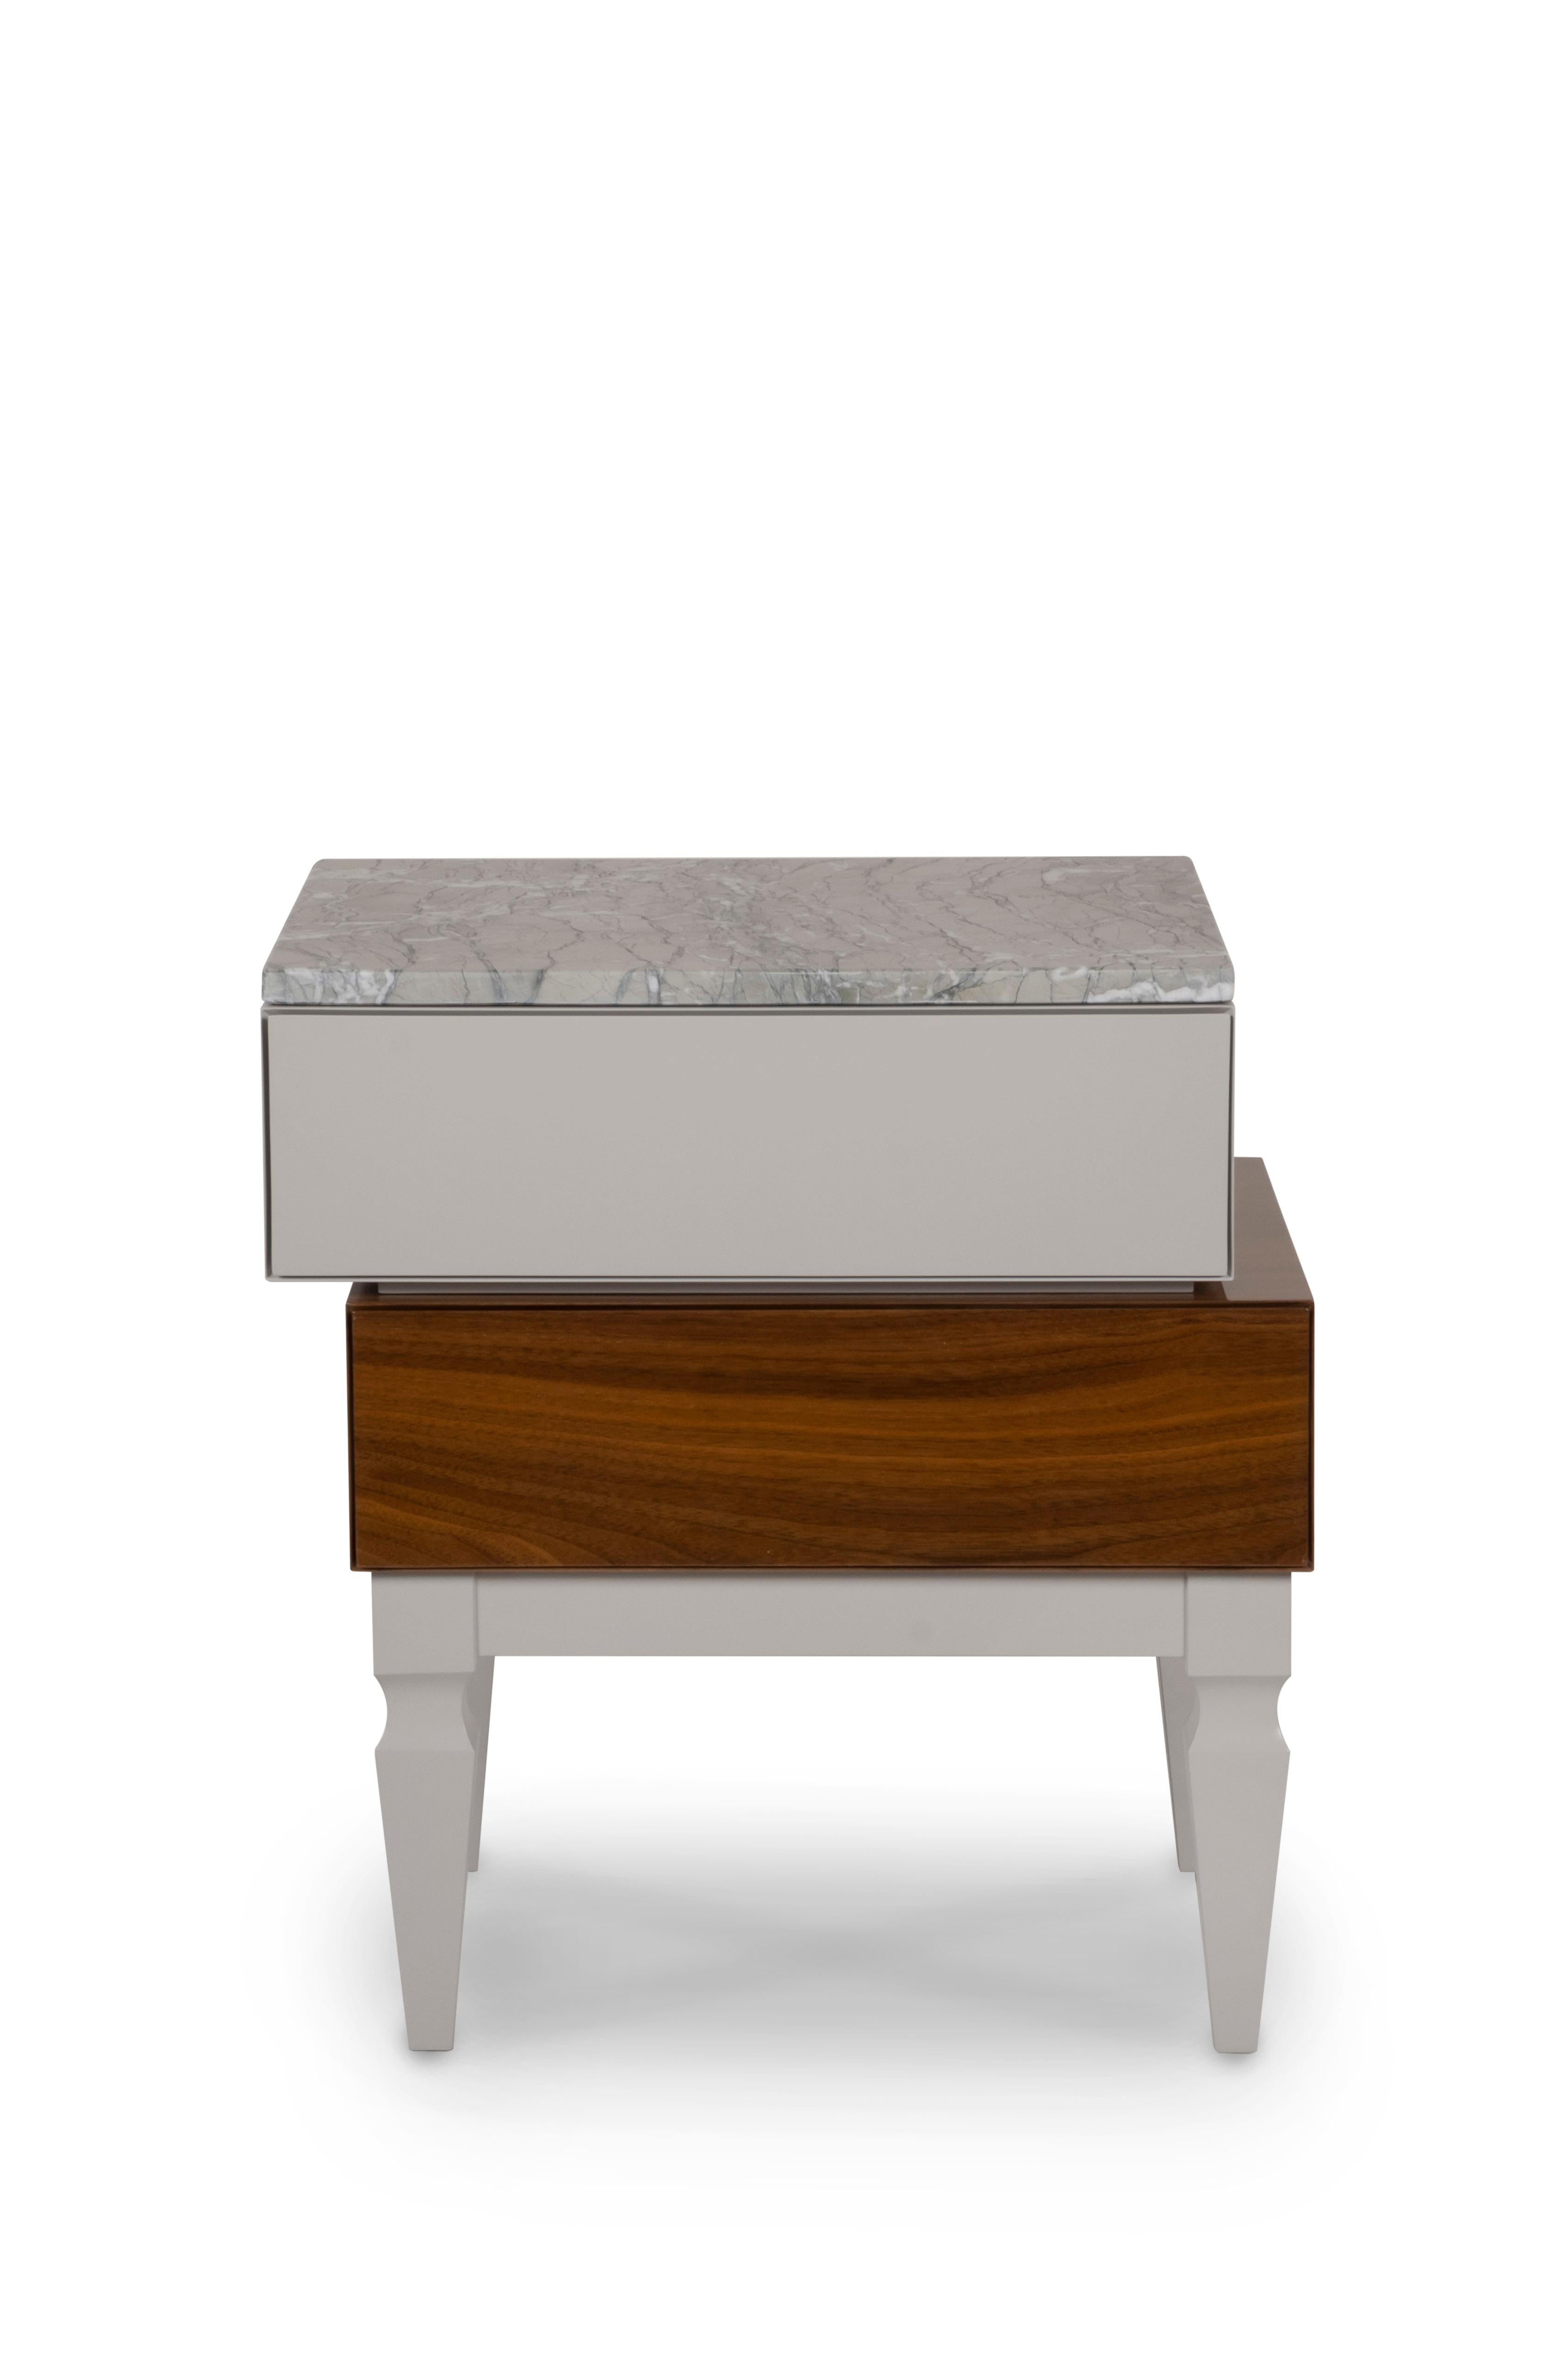 Nachttisch Block, Modern Collection'S, handgefertigt in Portugal - Europa von GF Modern.

Der Nachttisch Block bietet ein schräges und einzigartiges Design für Ihren Komfortbereich. Das Fach aus Nussbaumholz und die Platte aus Verde Antigua-Marmor